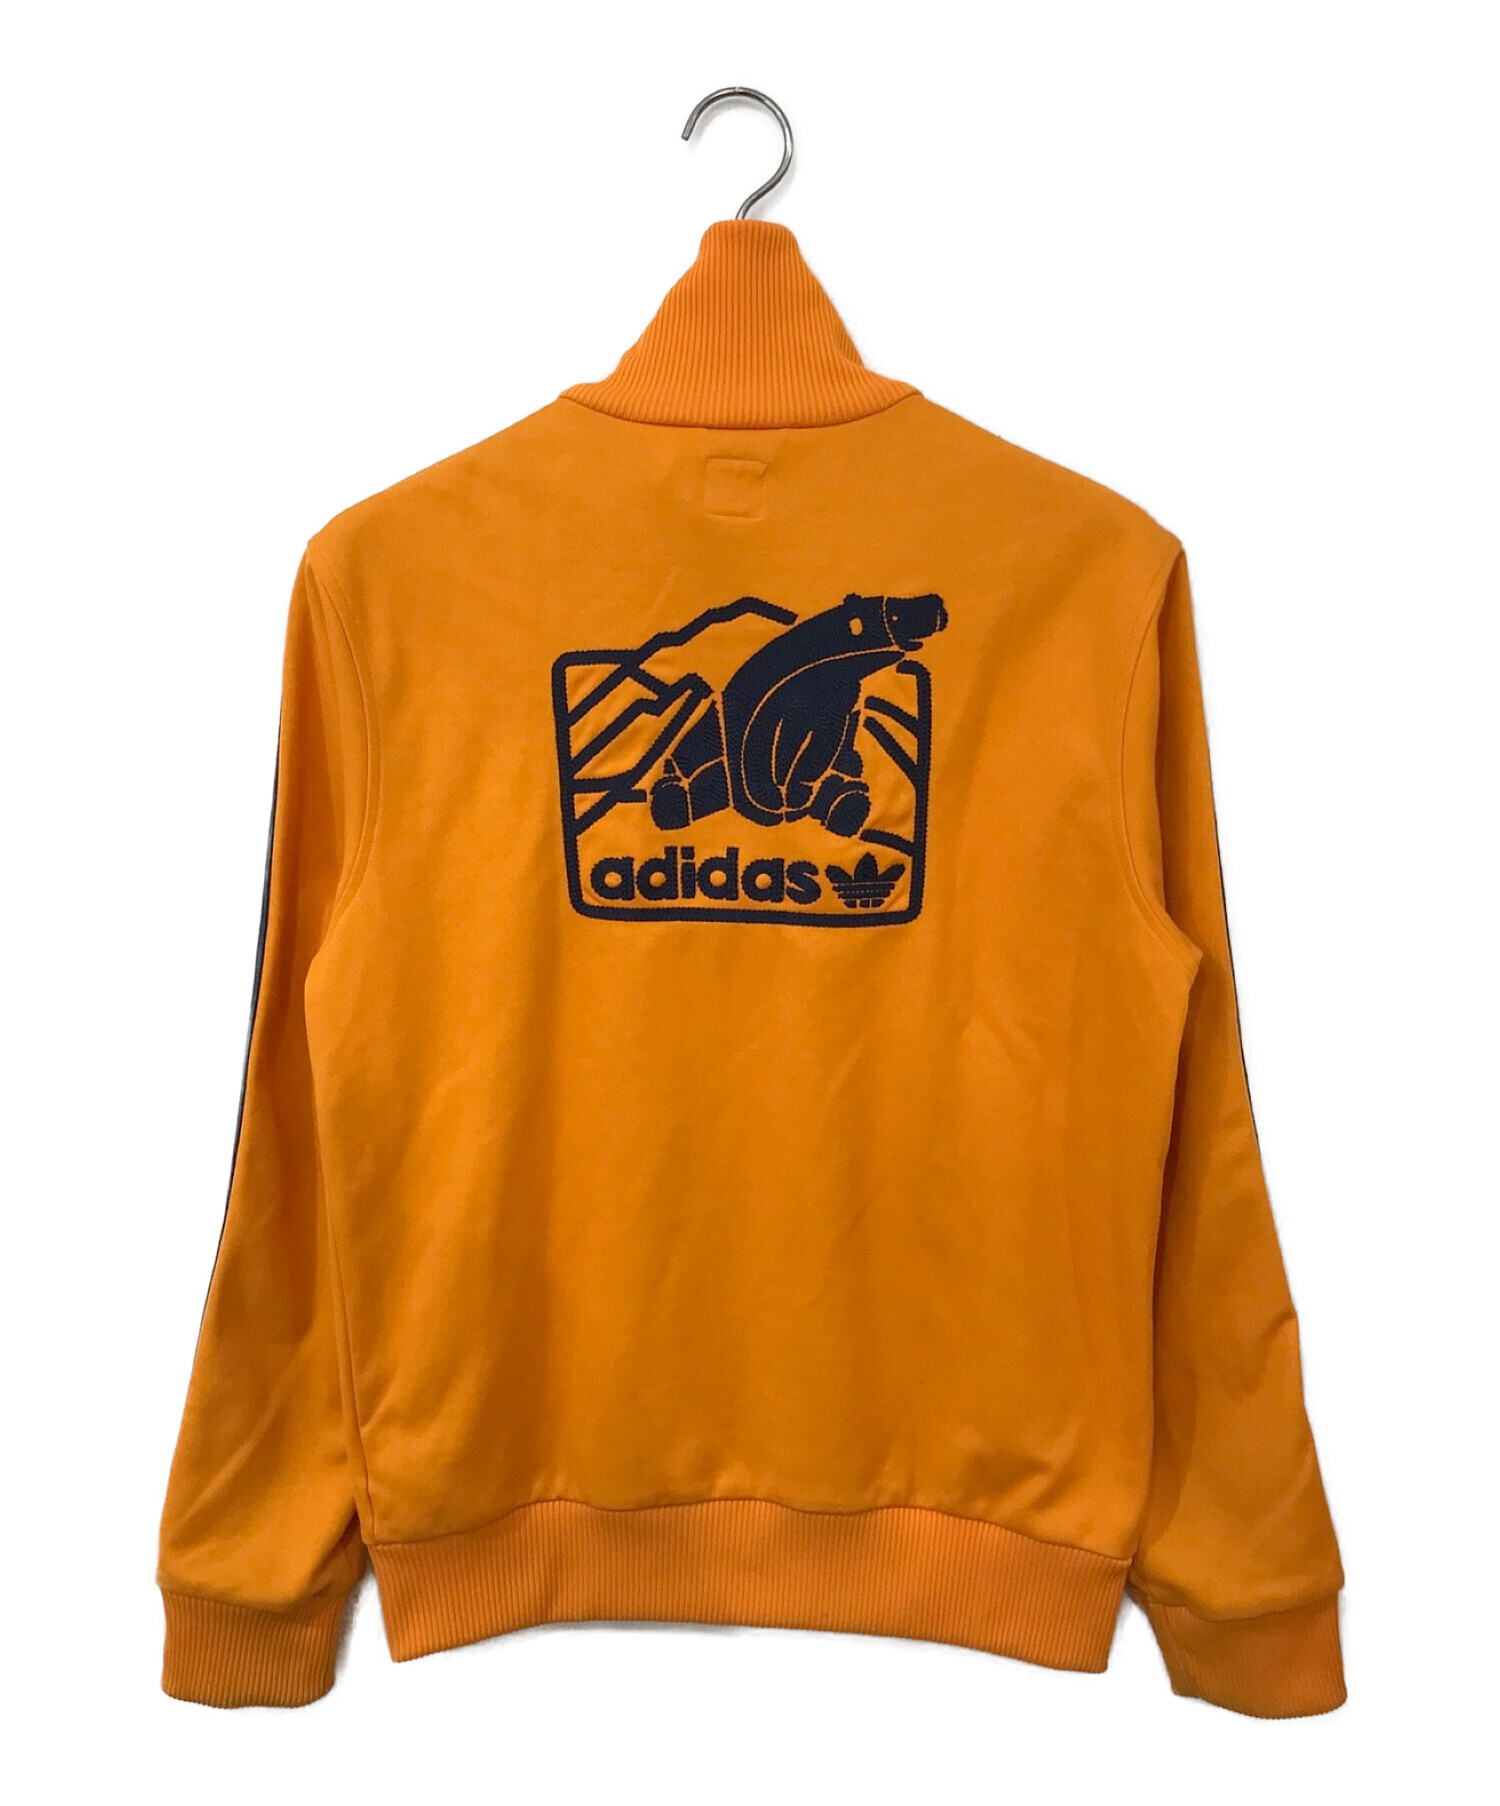 adidas (アディダス) クマ刺繍トラックジャケット オレンジ サイズ:M